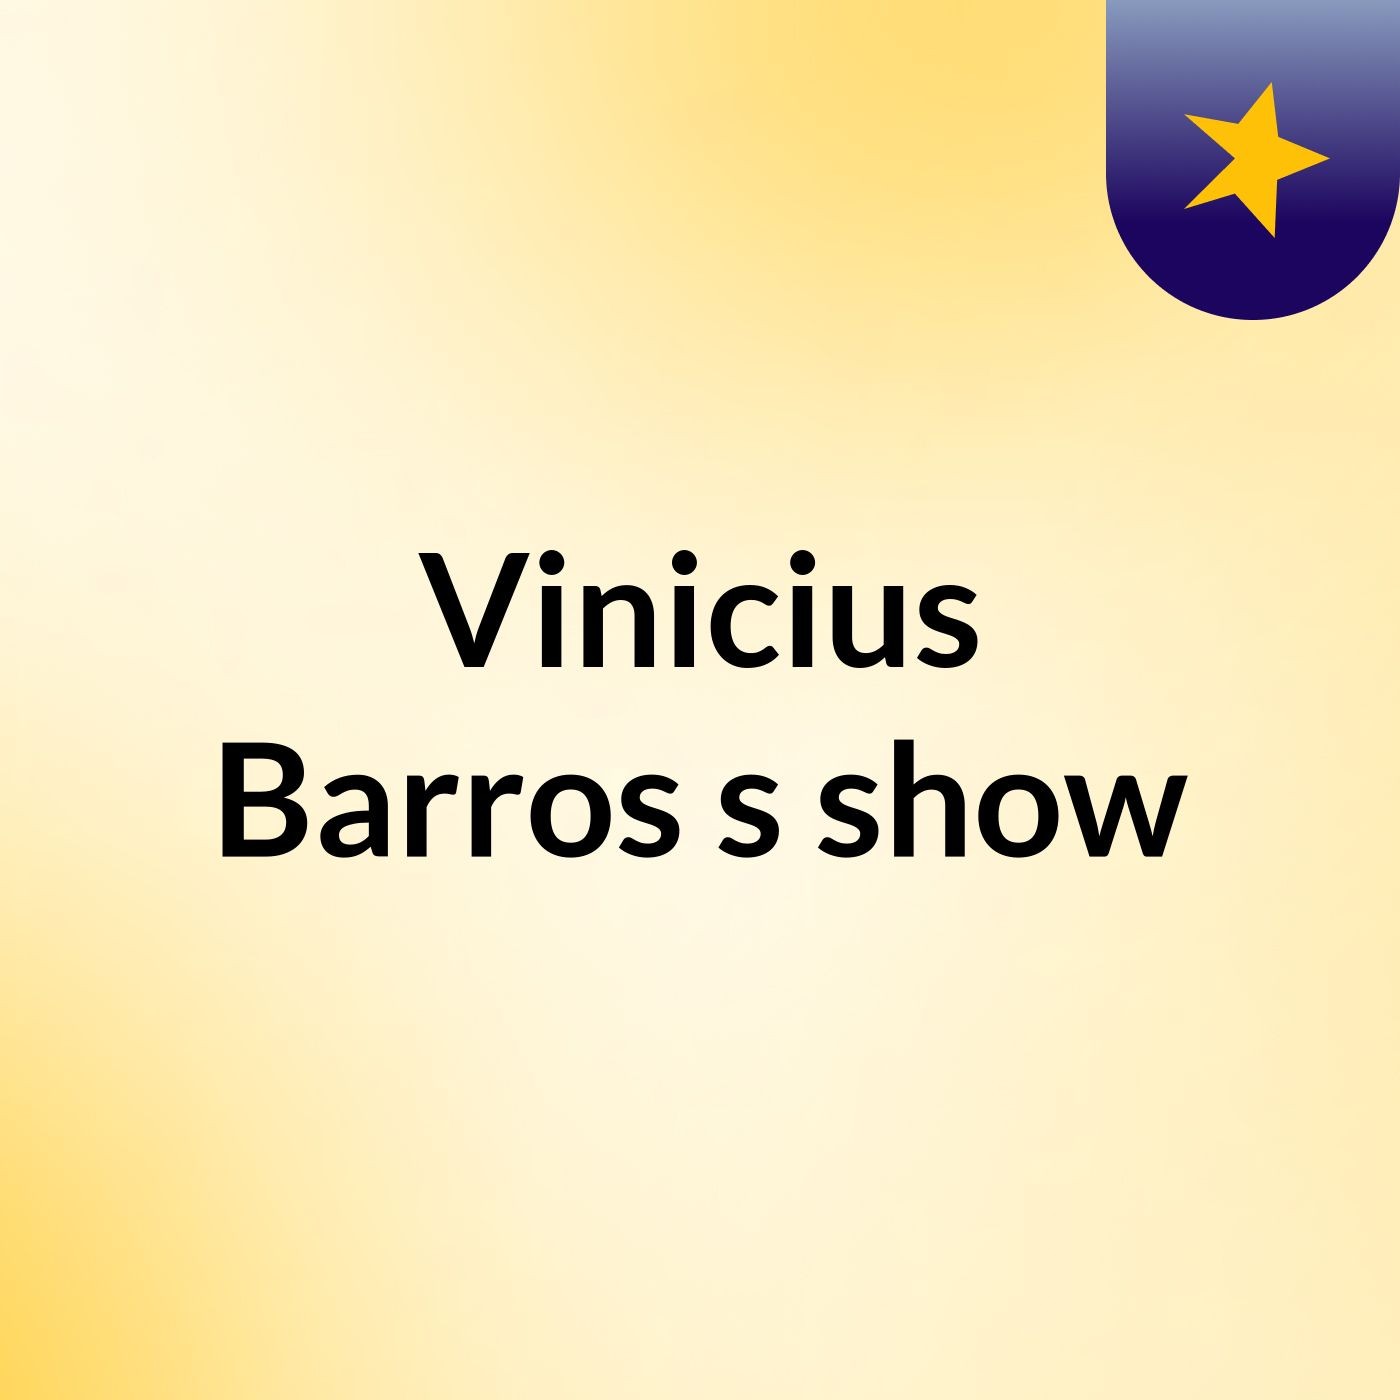 Vinicius Barros's show